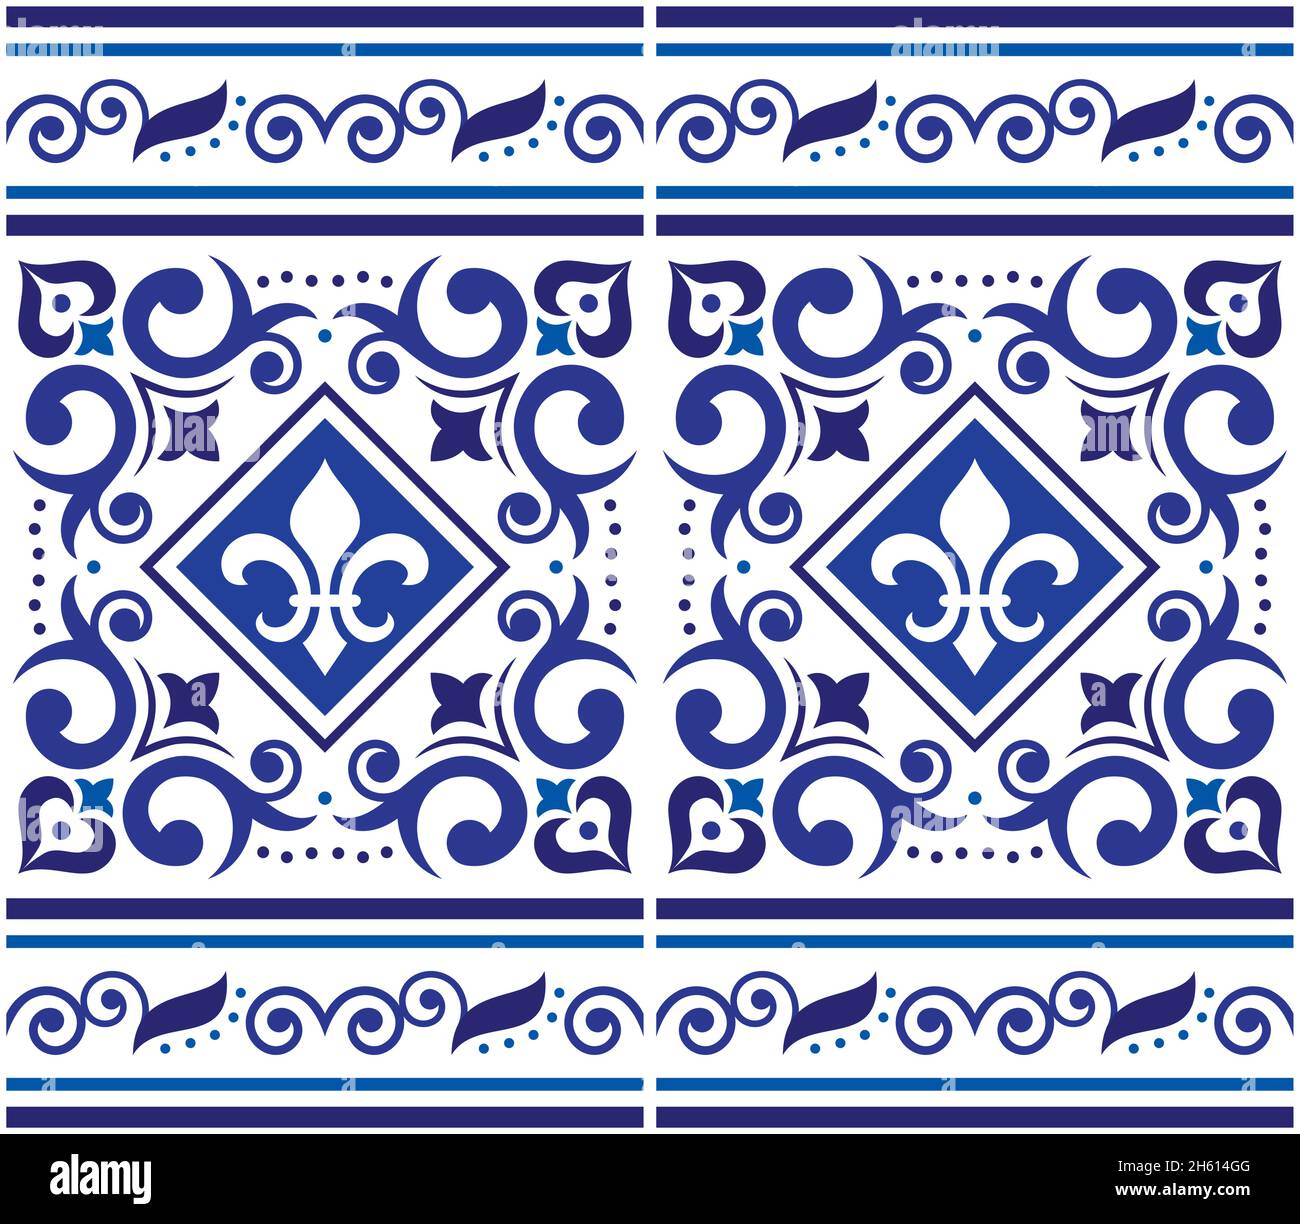 Azulejo Fliesen nahtlose Vektor-Muster mit Rahmen oder Grenze- Lissabon dekorativen Stil, Fleur de LIS-Design von Kunst aus Portugal inspiriert Stock Vektor